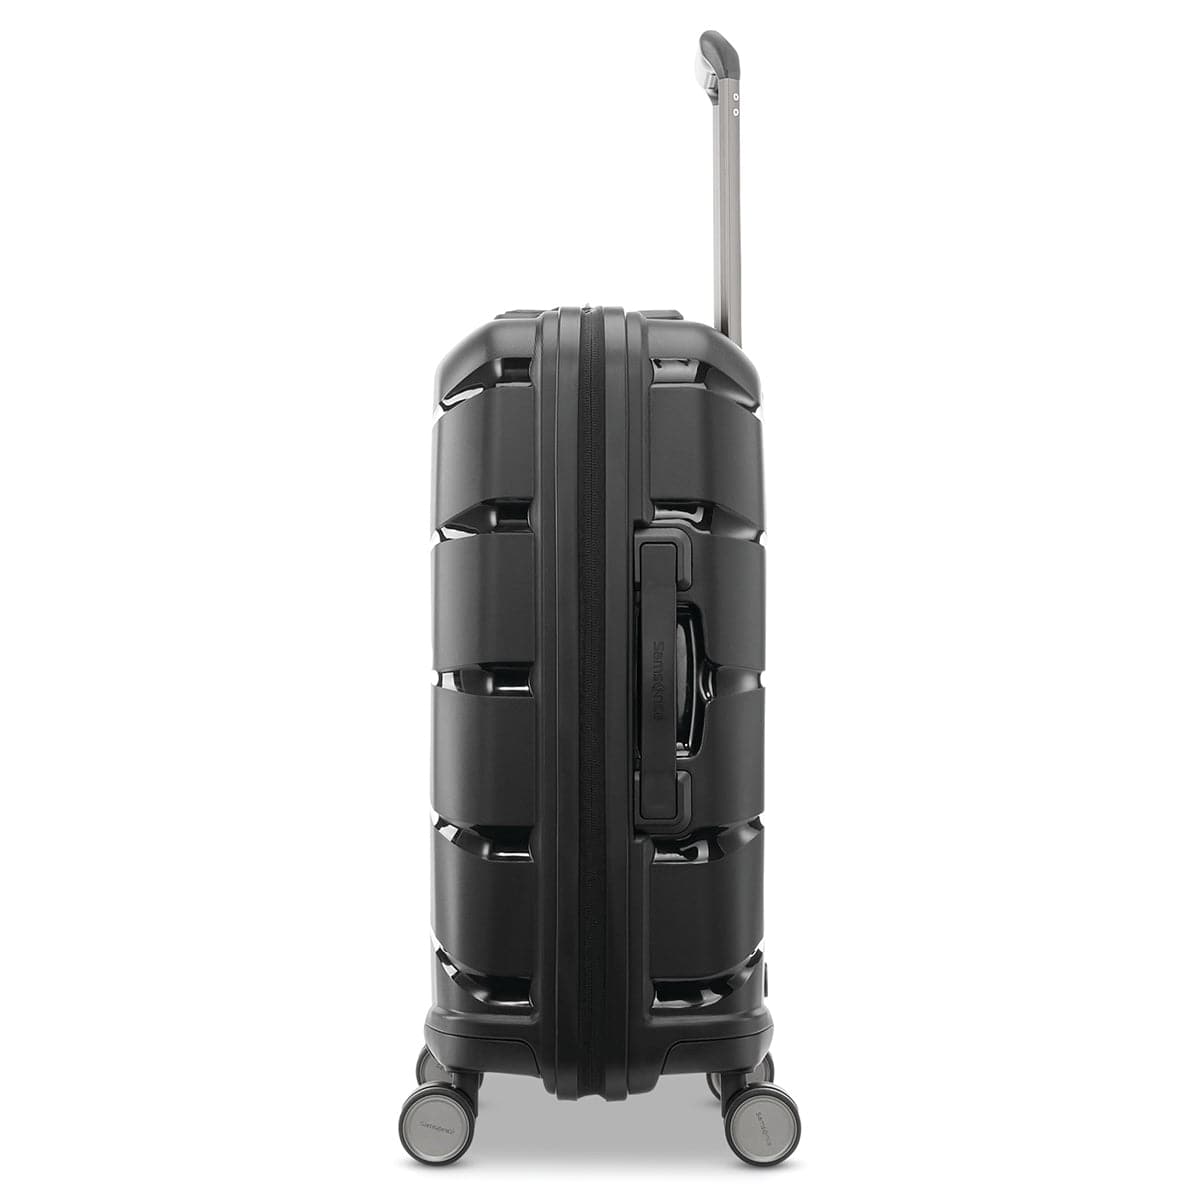 Samsonite Outline Pro Hardside 22" Spinner Carry-On Luggage